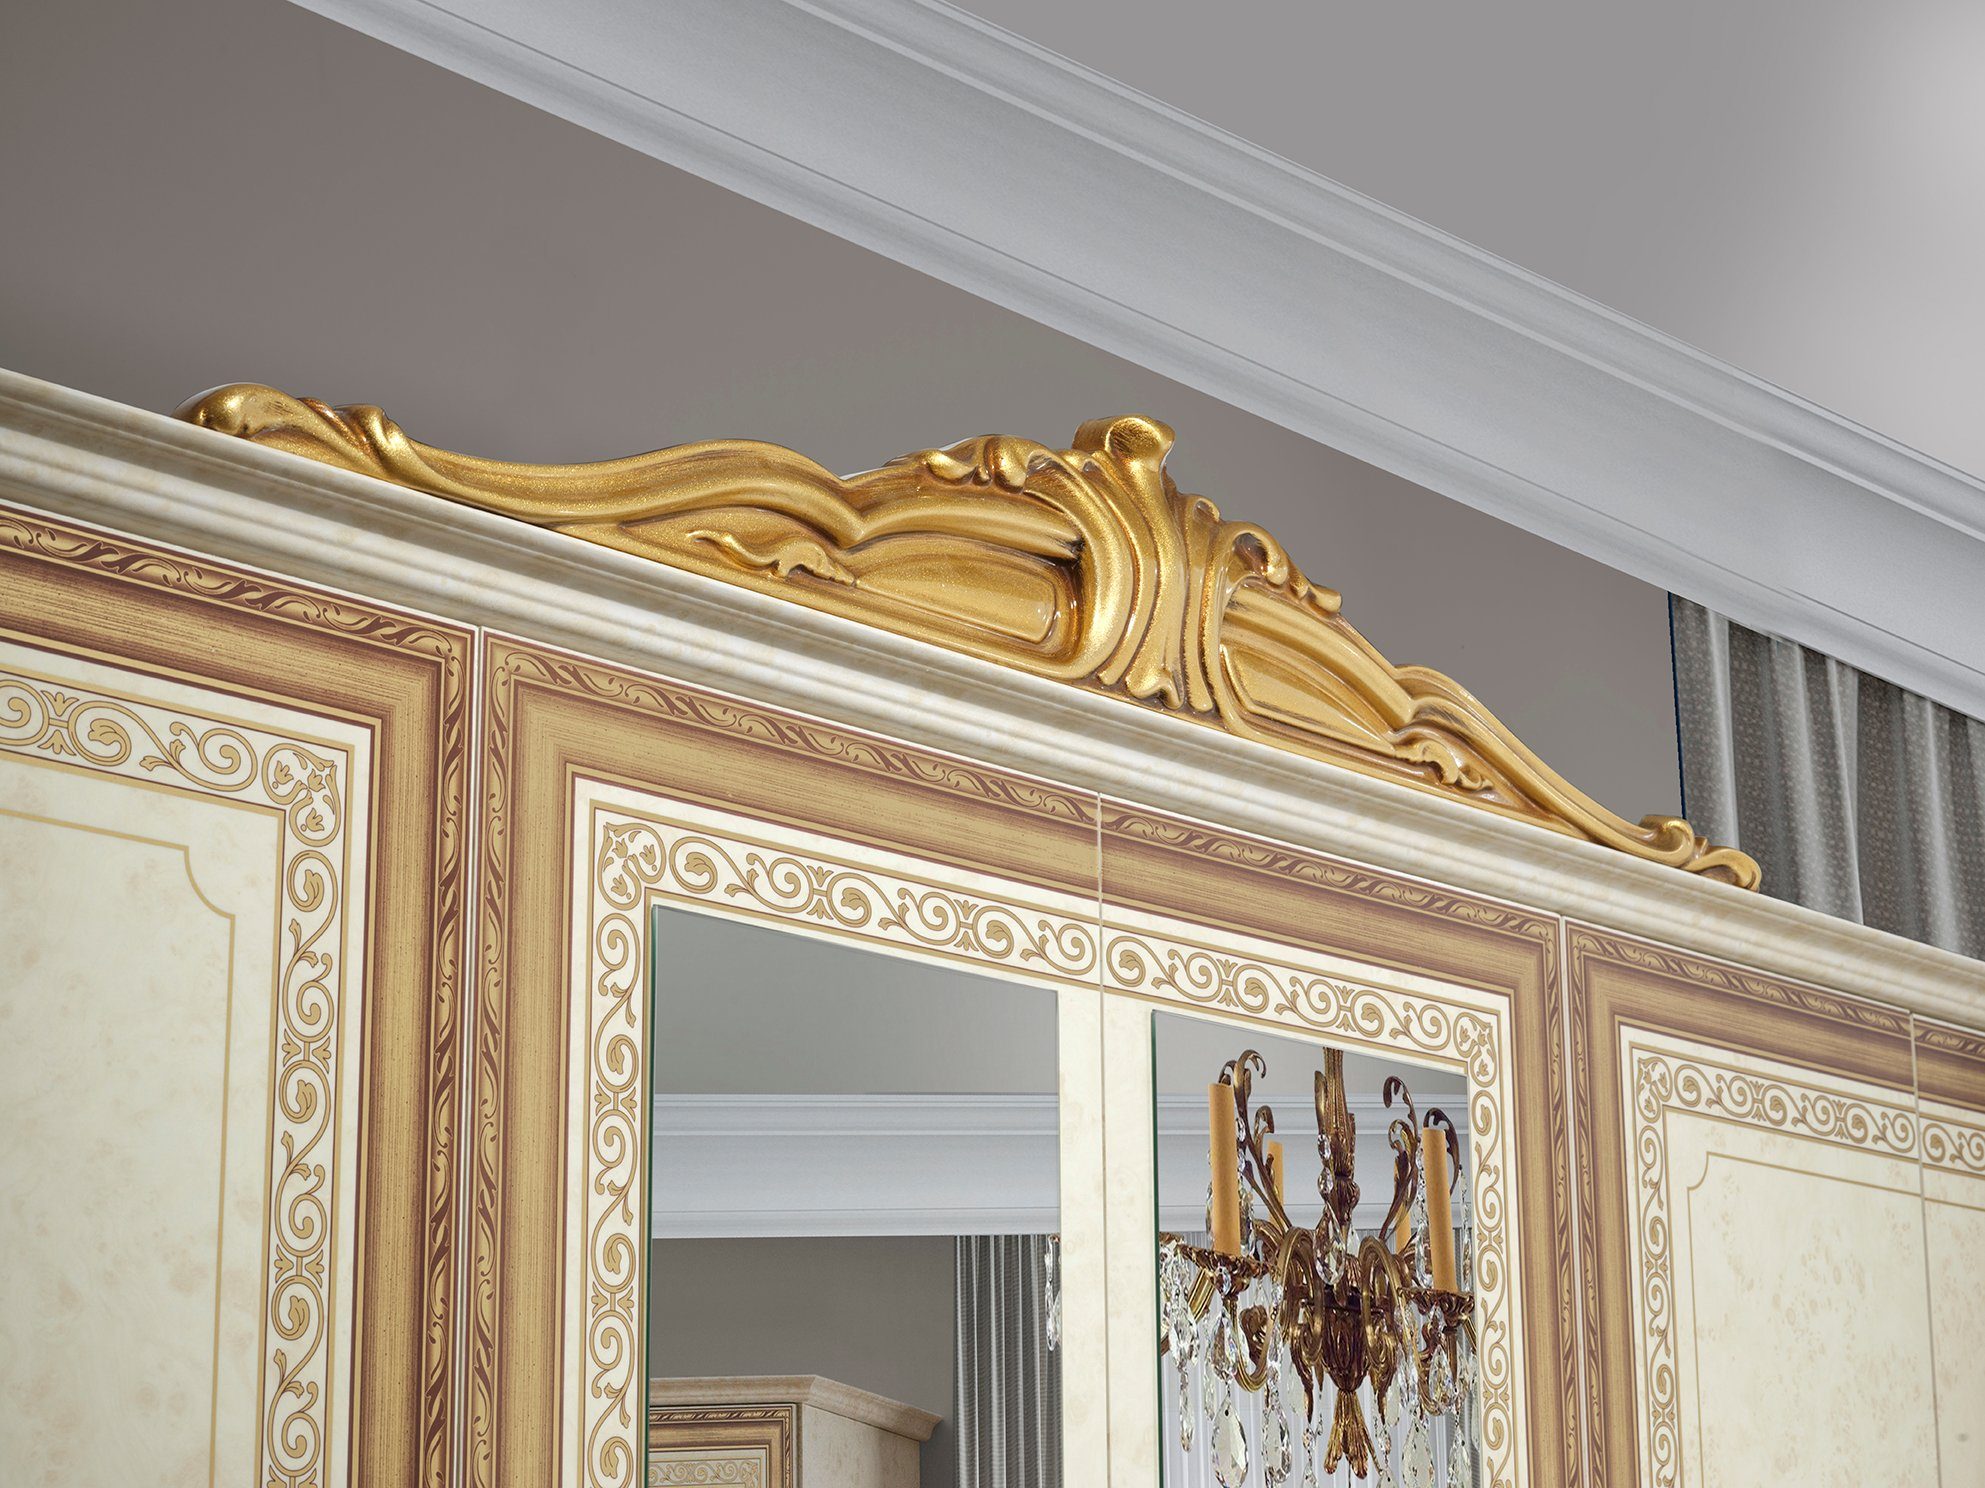 Hochglanz Schlafzimmer-Set Interdesign24 Stil), (6-teilig, Beige/Gold klassischen Barock im in Giulia,